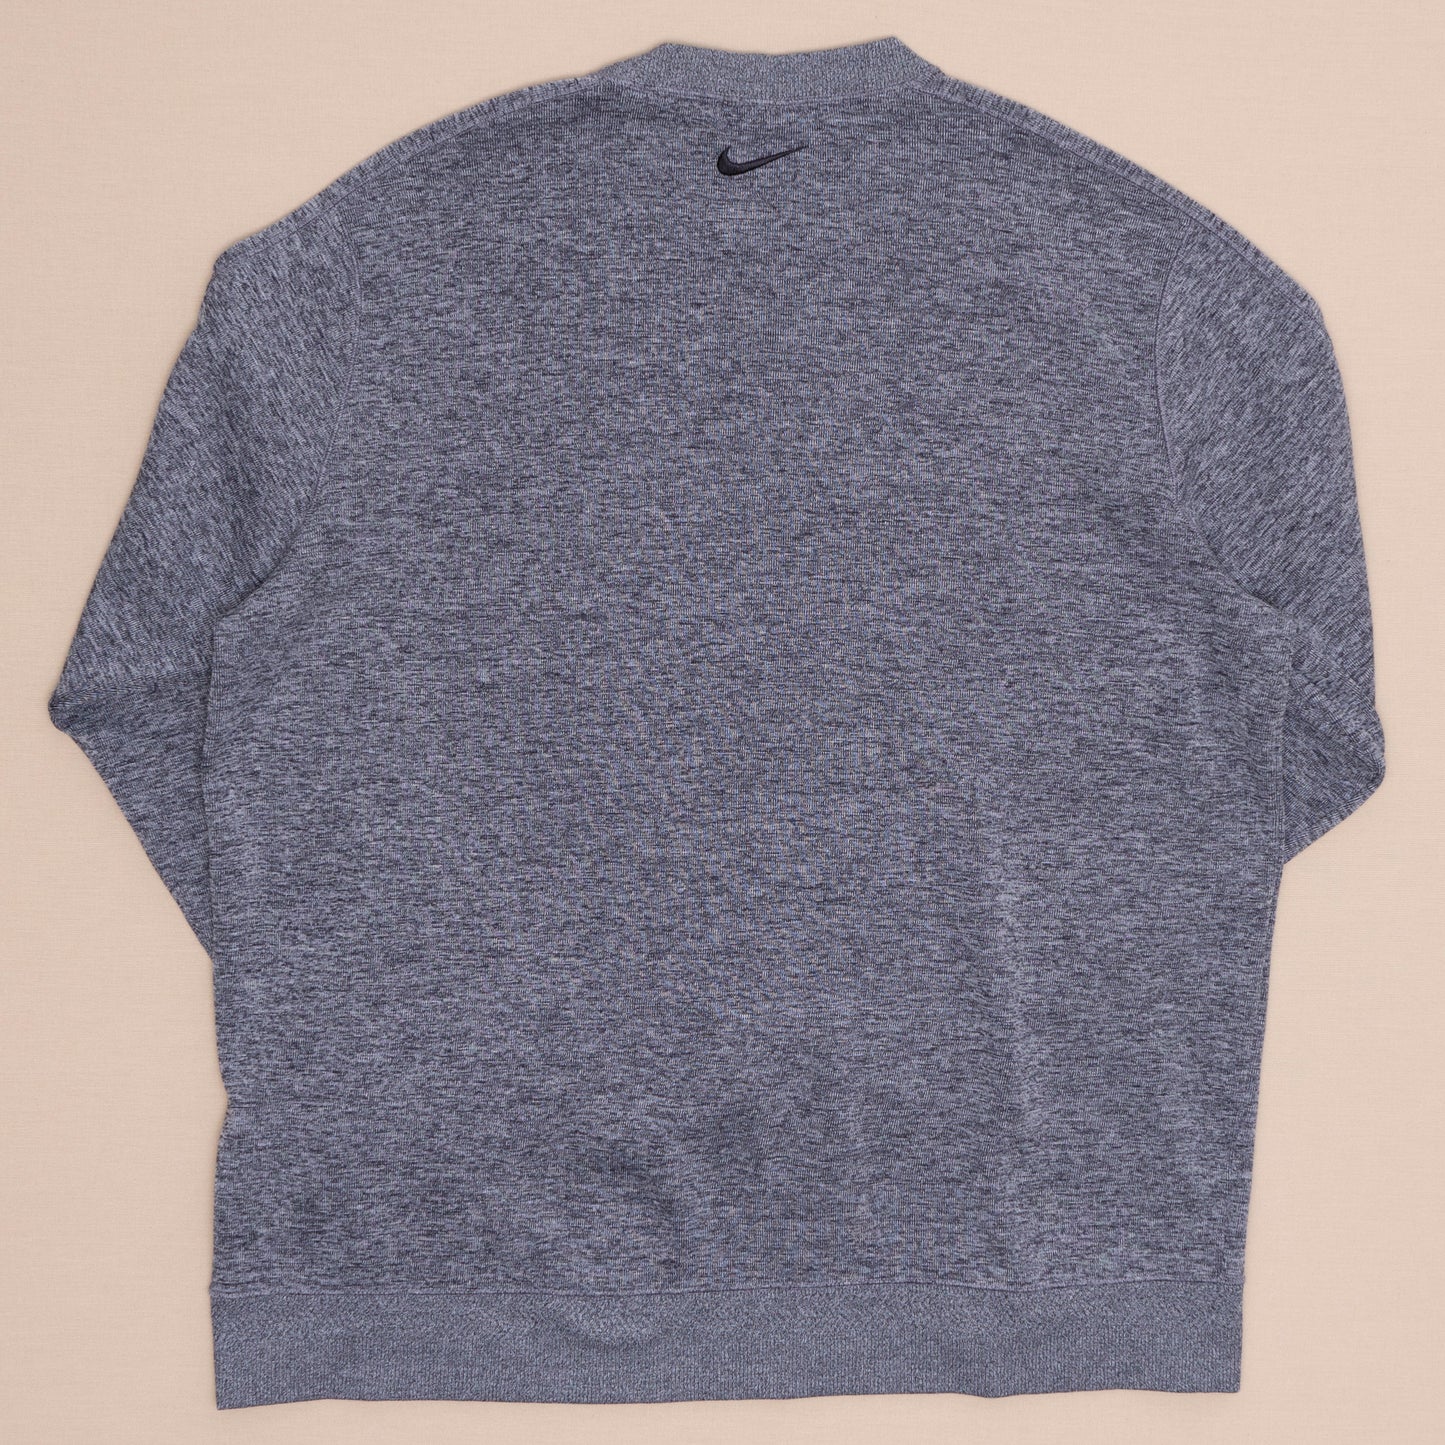 Nike Golf Sweater, XL